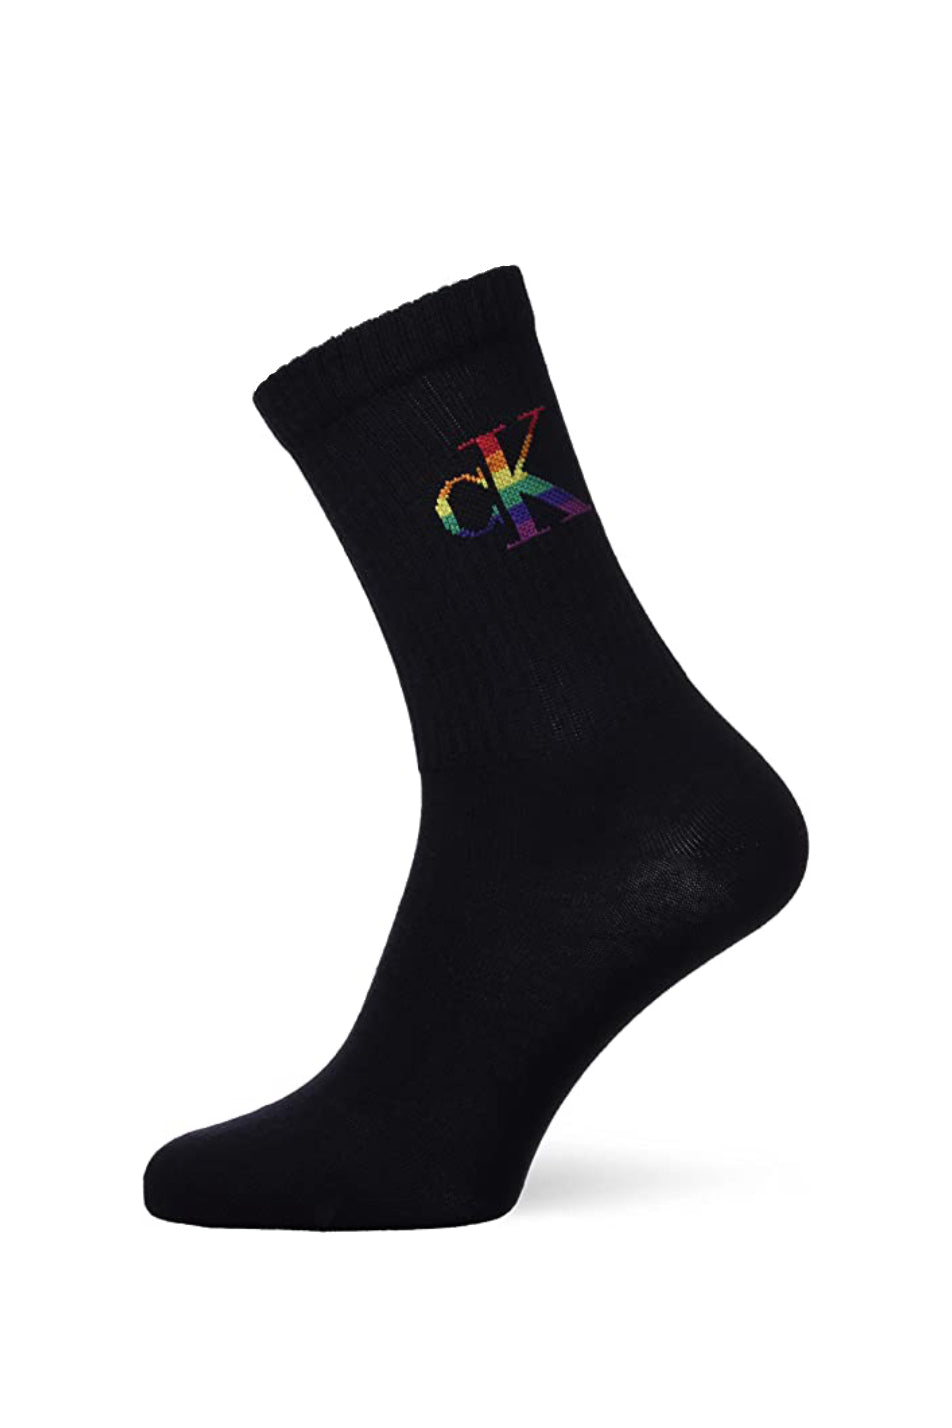 Calvin Klein Men's Pride Sock